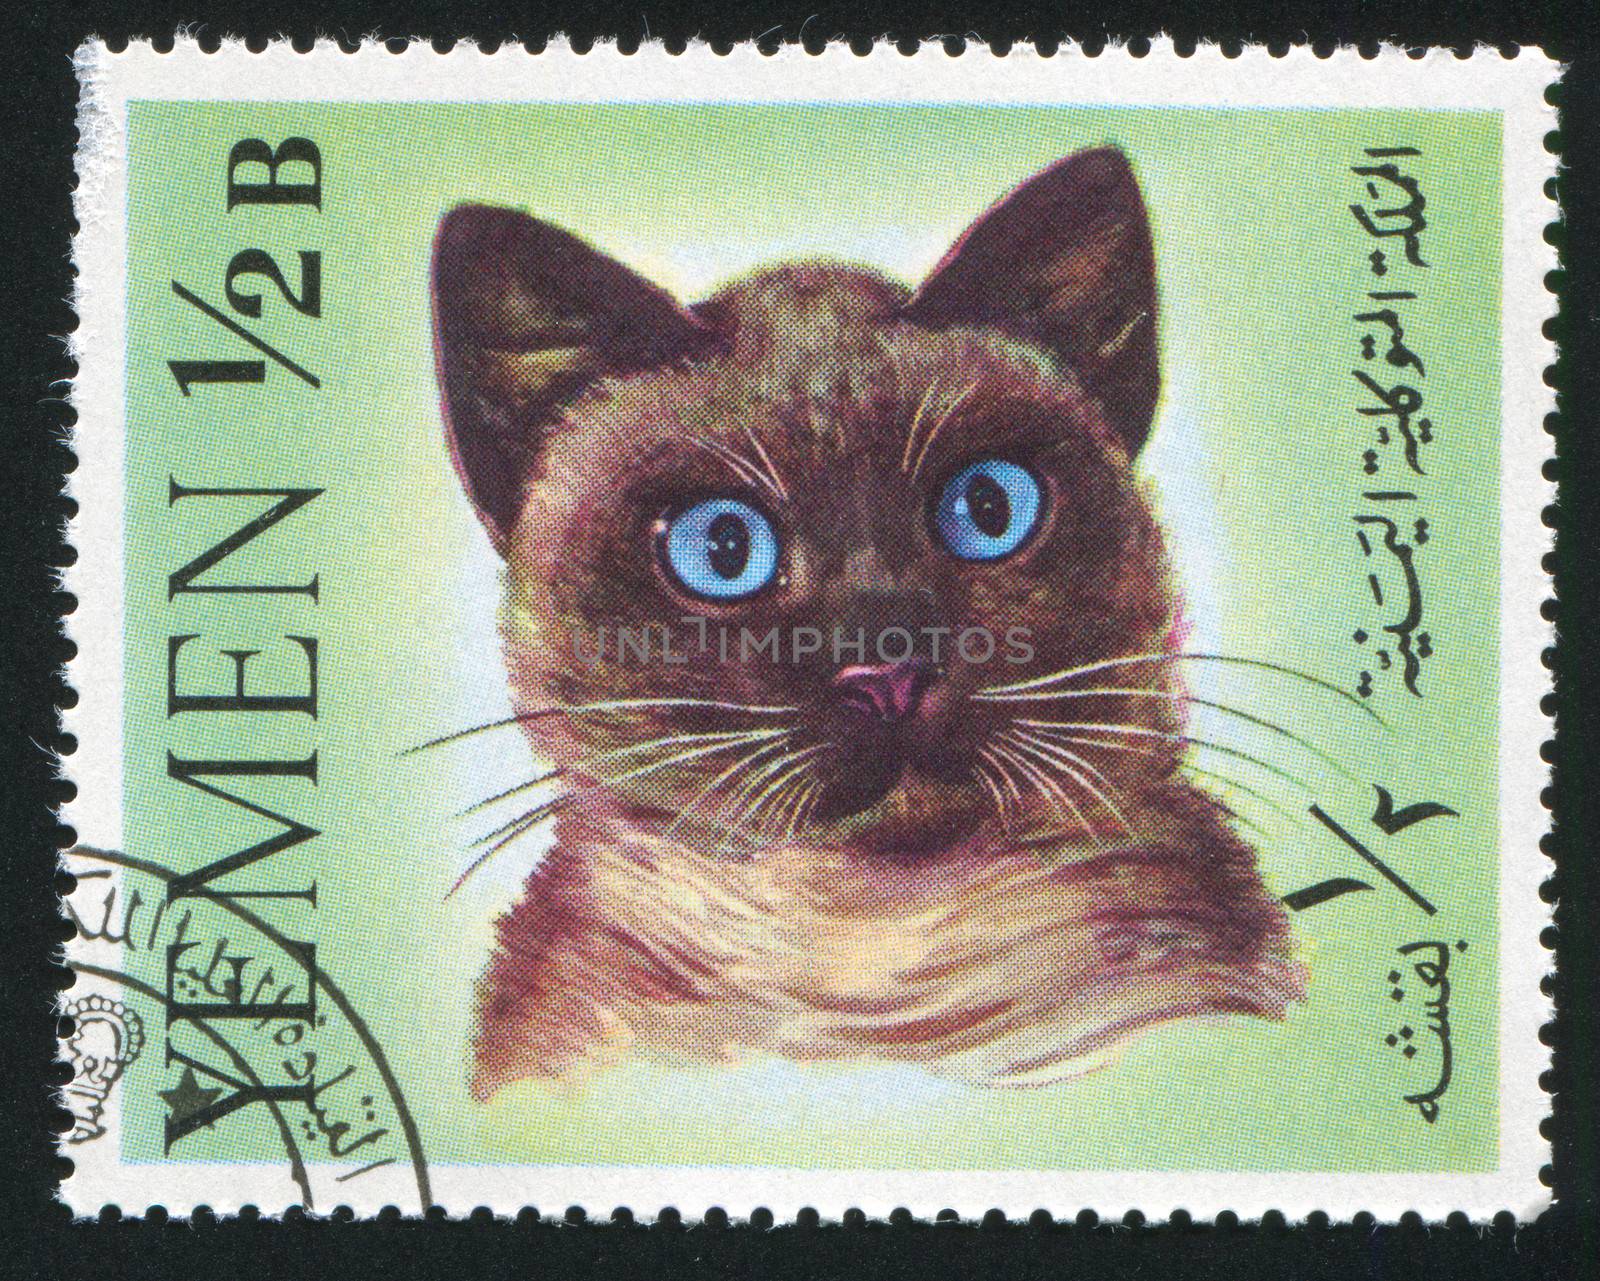 YEMEN - CIRCA 1972: stamp printed by Yemen, shows cat, circa 1972